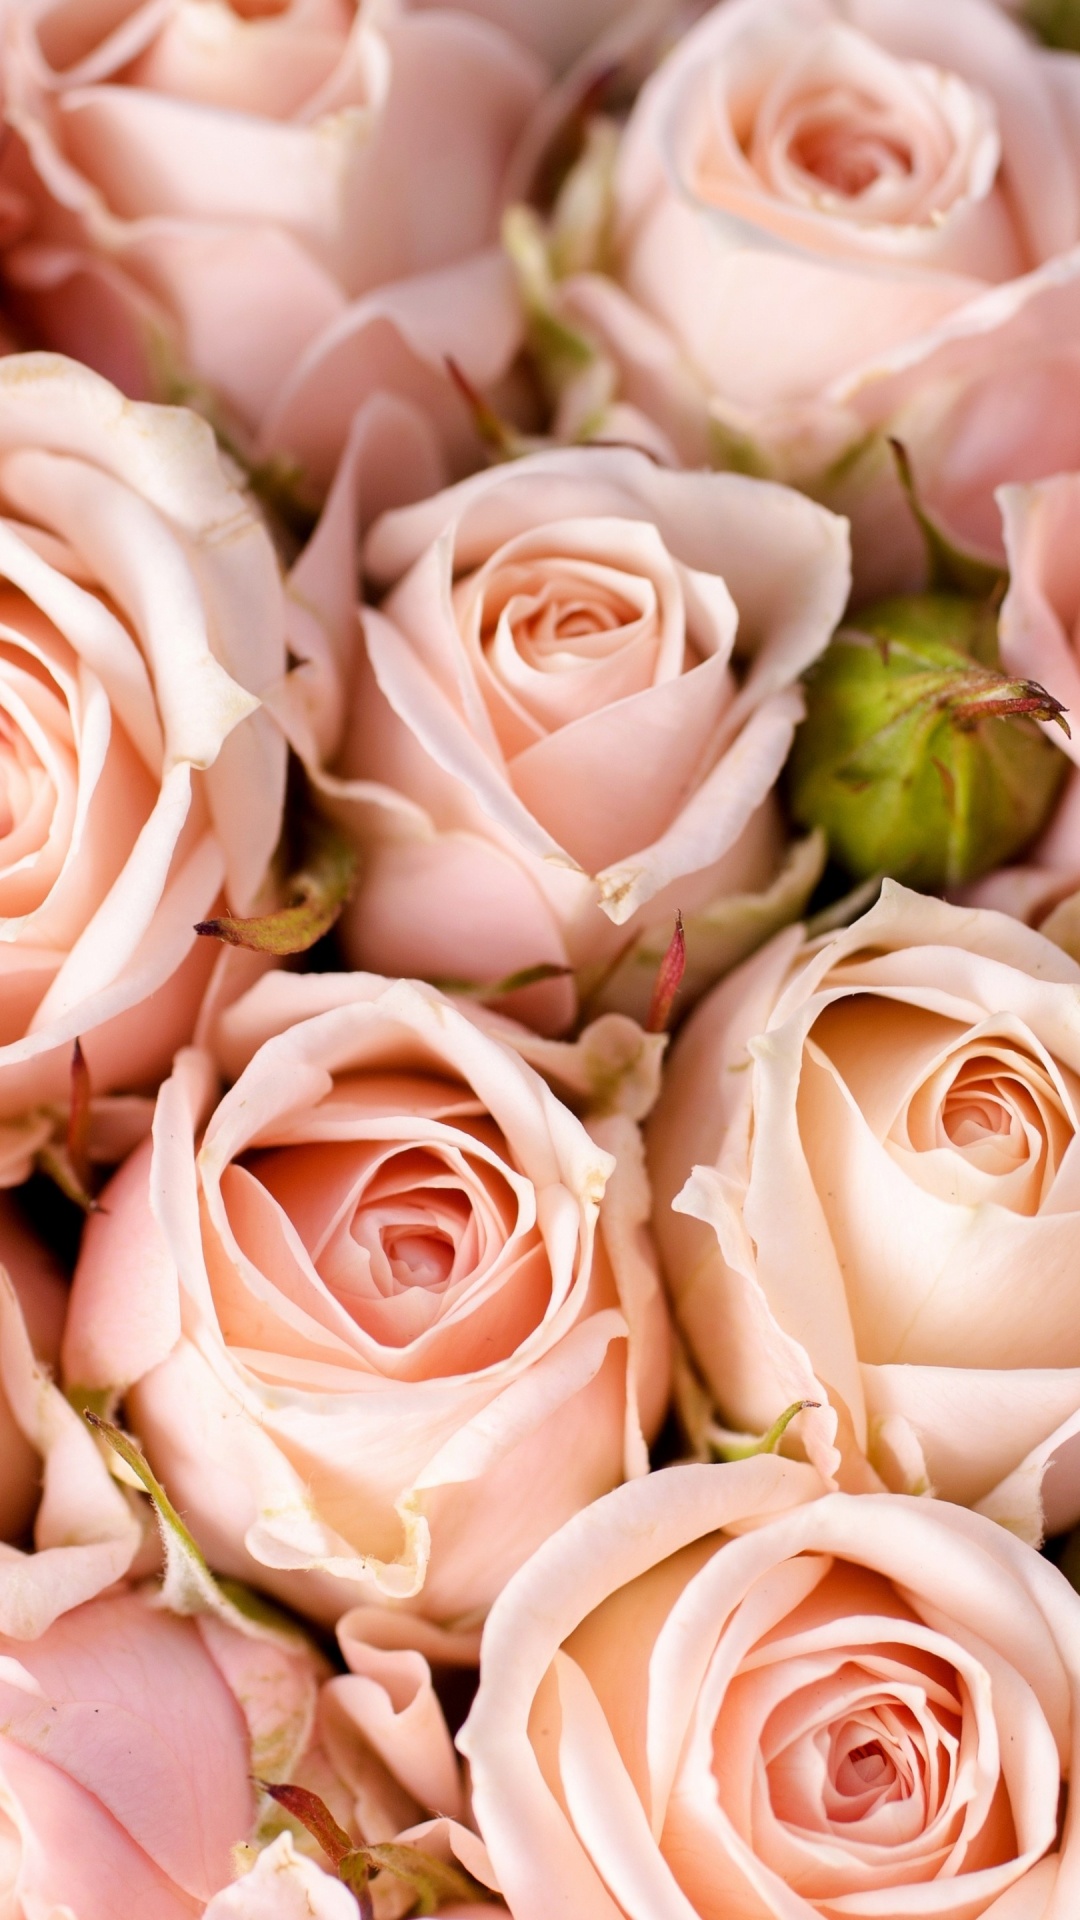 多花, 粉红色, 壁画, 玫瑰花园, 粉红色的花朵 壁纸 1080x1920 允许